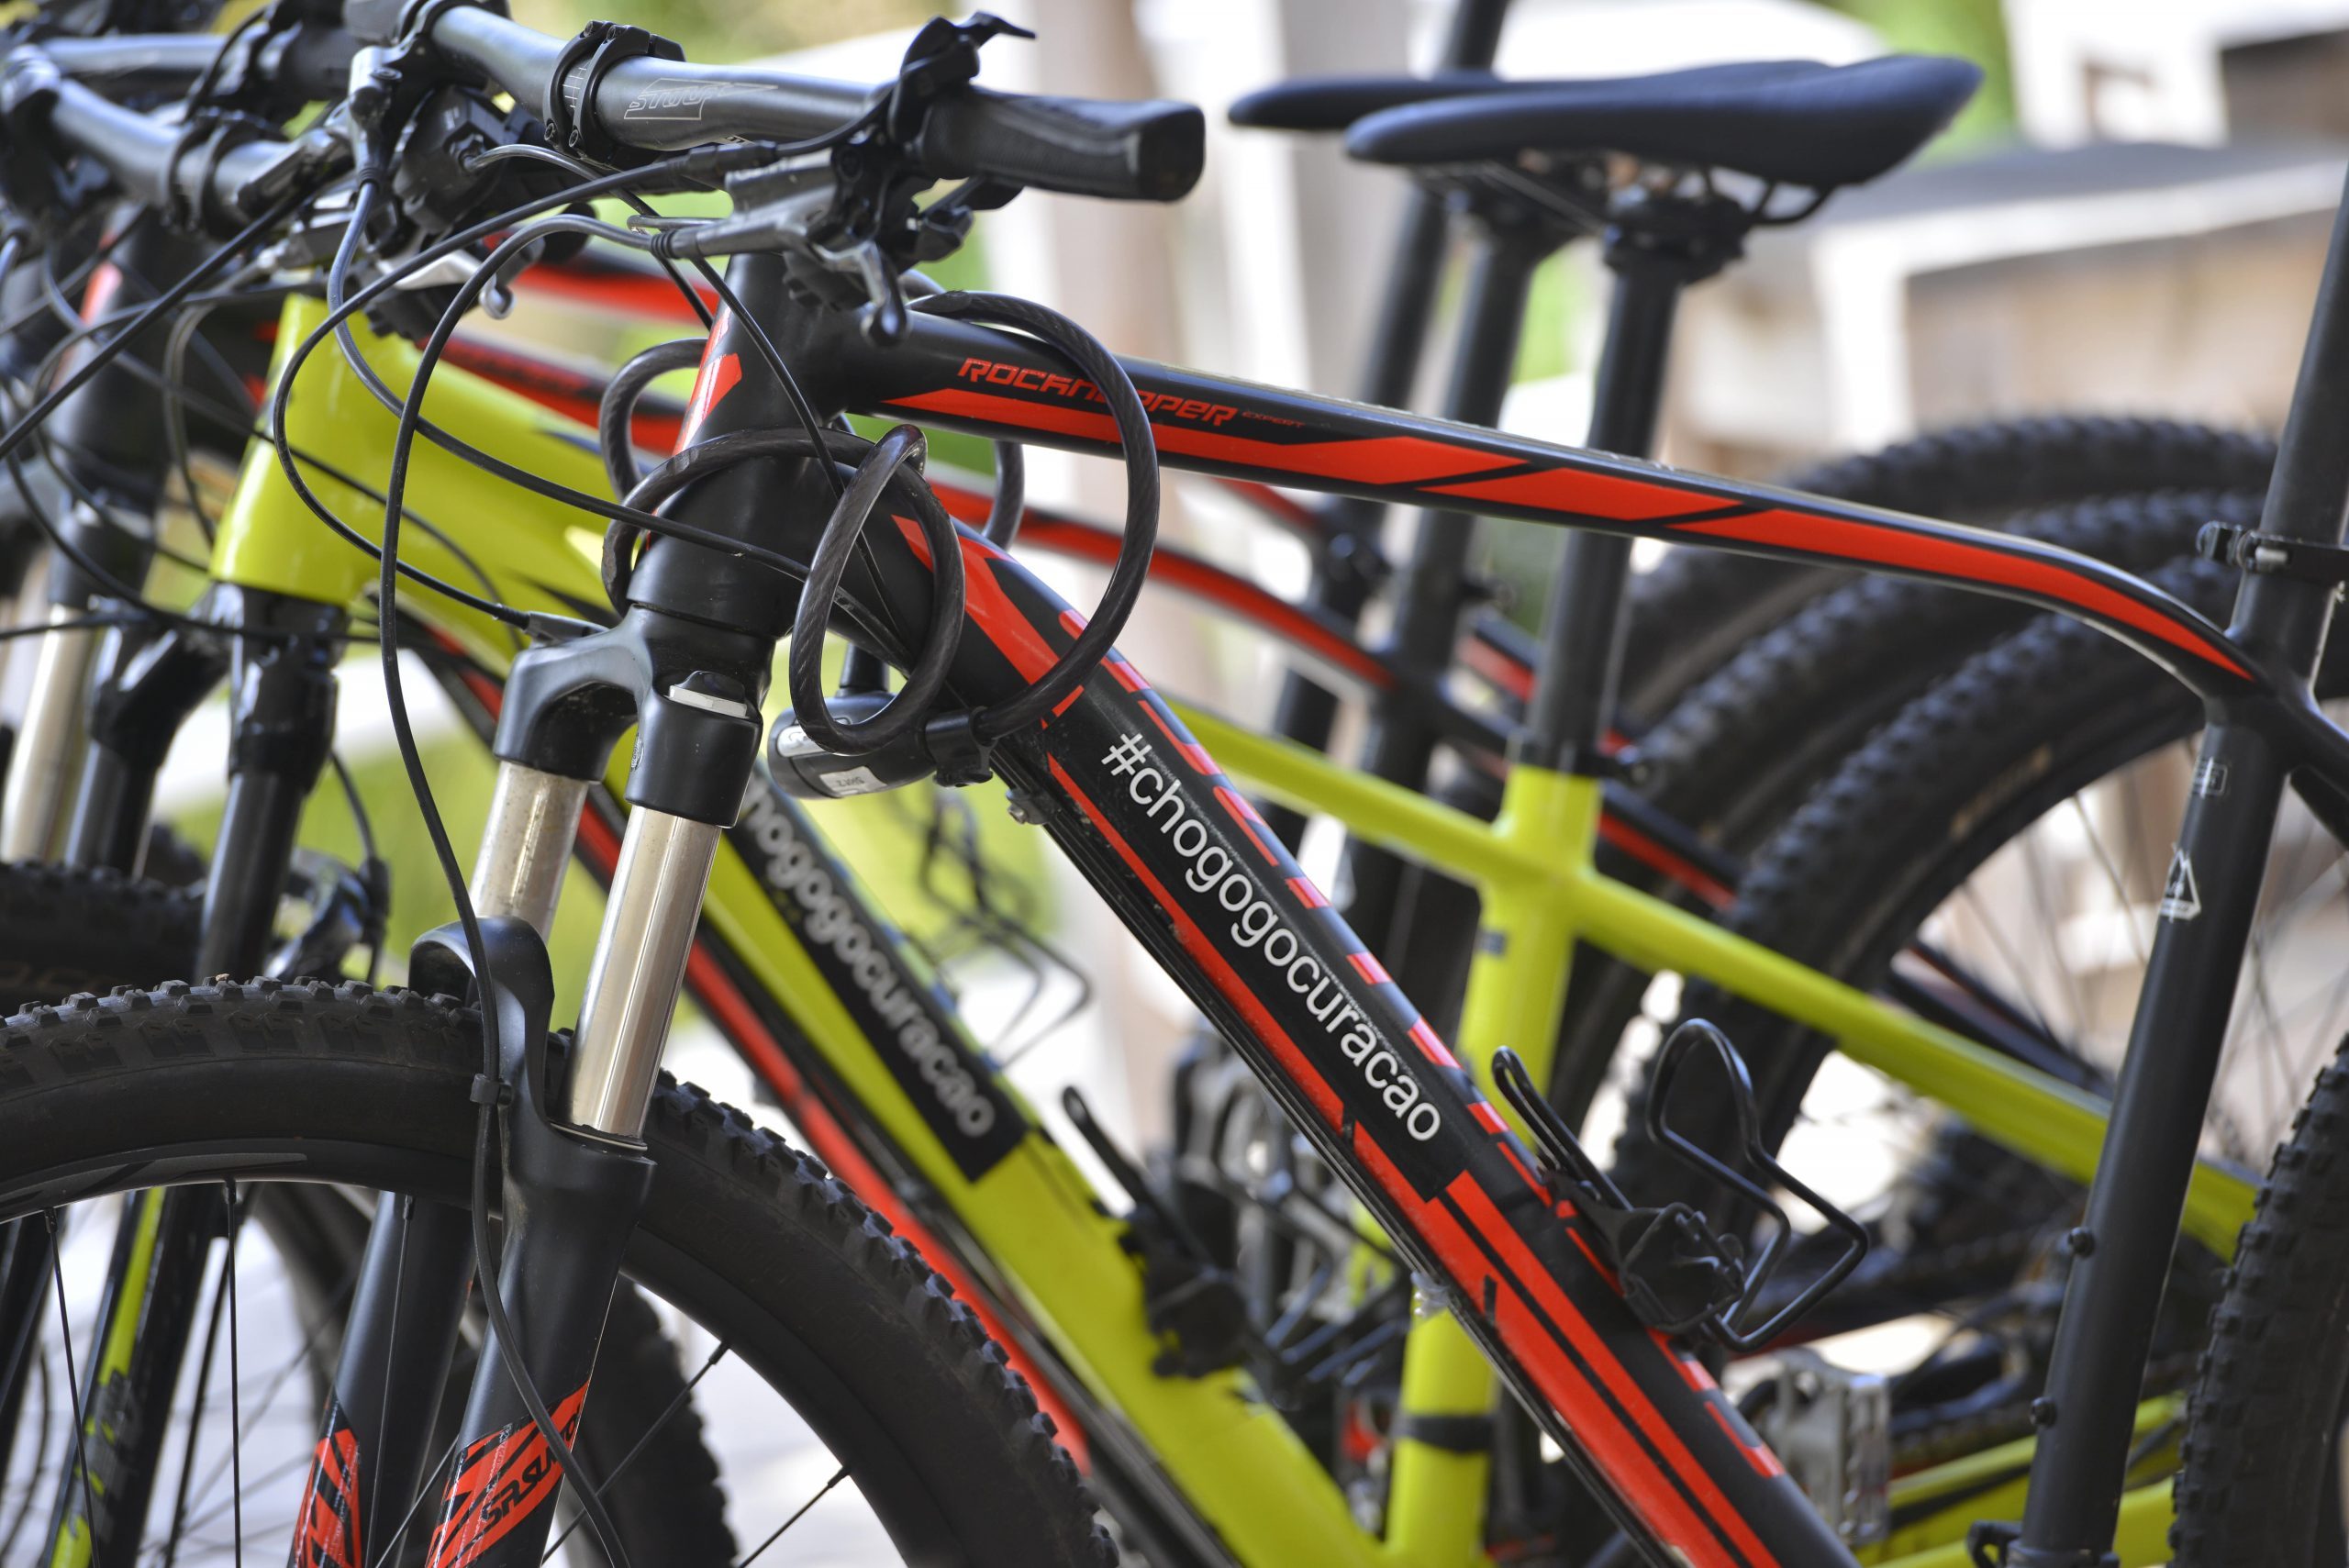 Mountainbikes van hoge kwaliteit zijn te huur bij de Chogogo fietsverhuur.